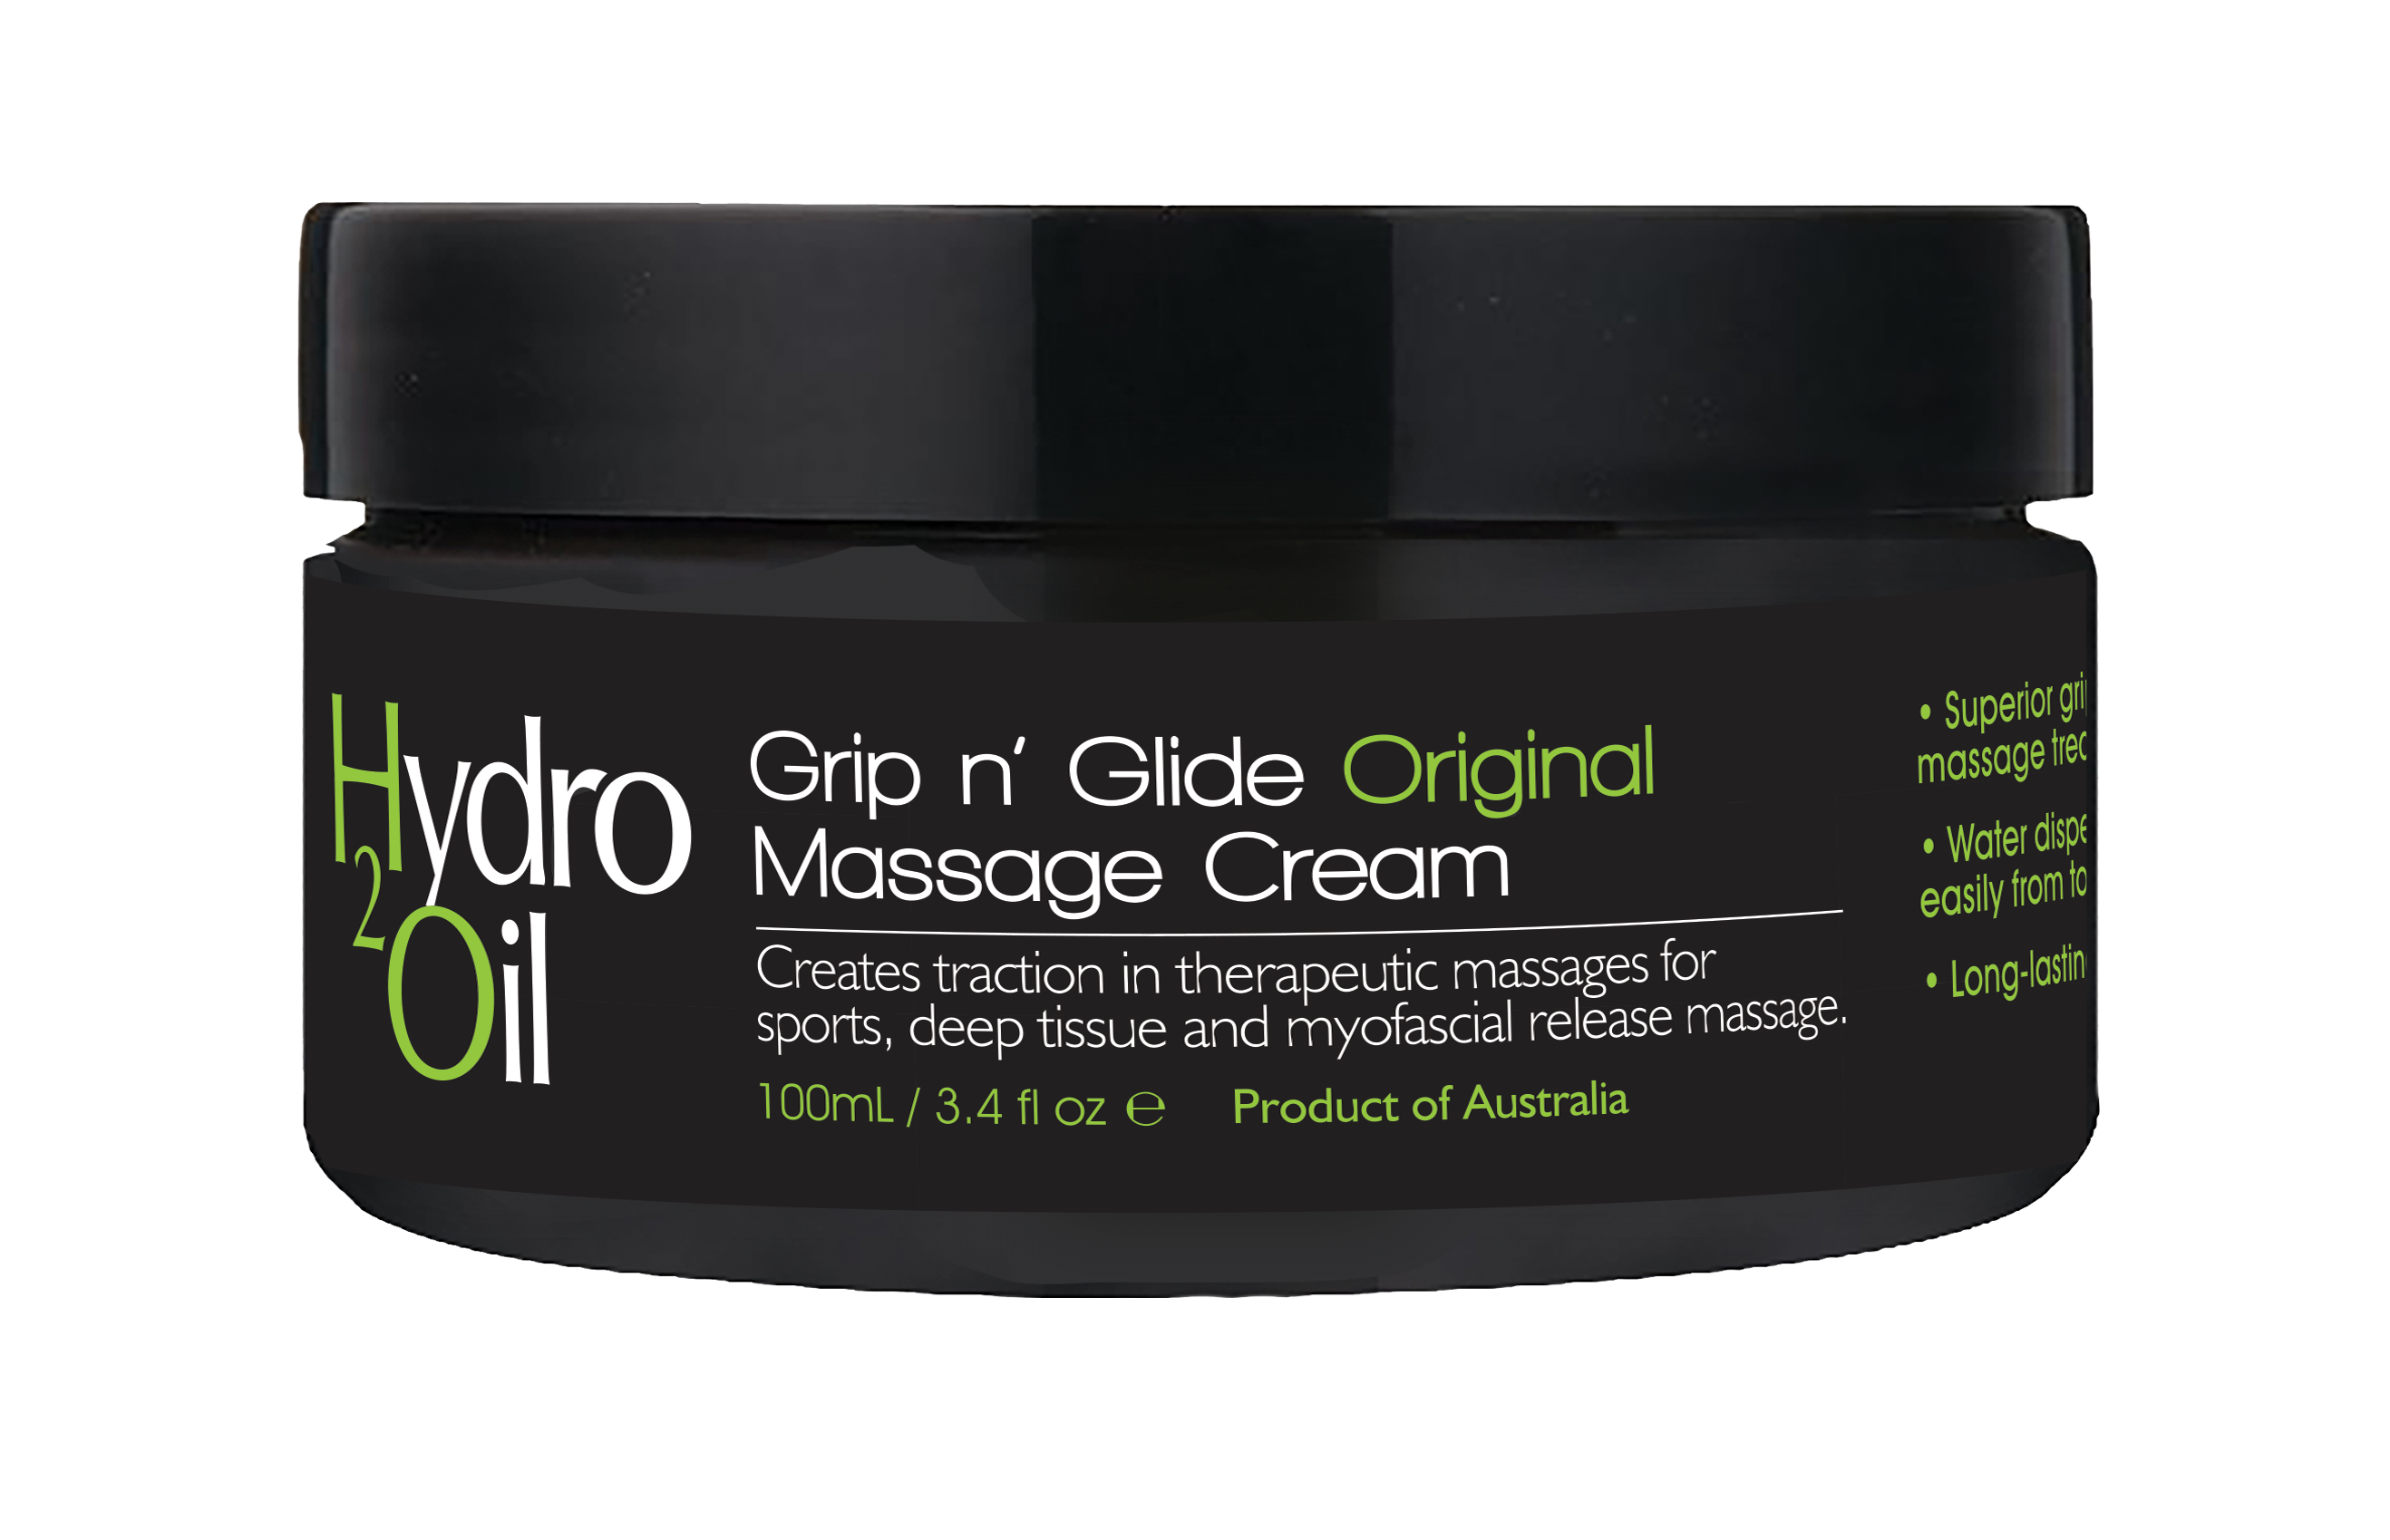 Hydro 2 Oil Massage Cream Original 100ml